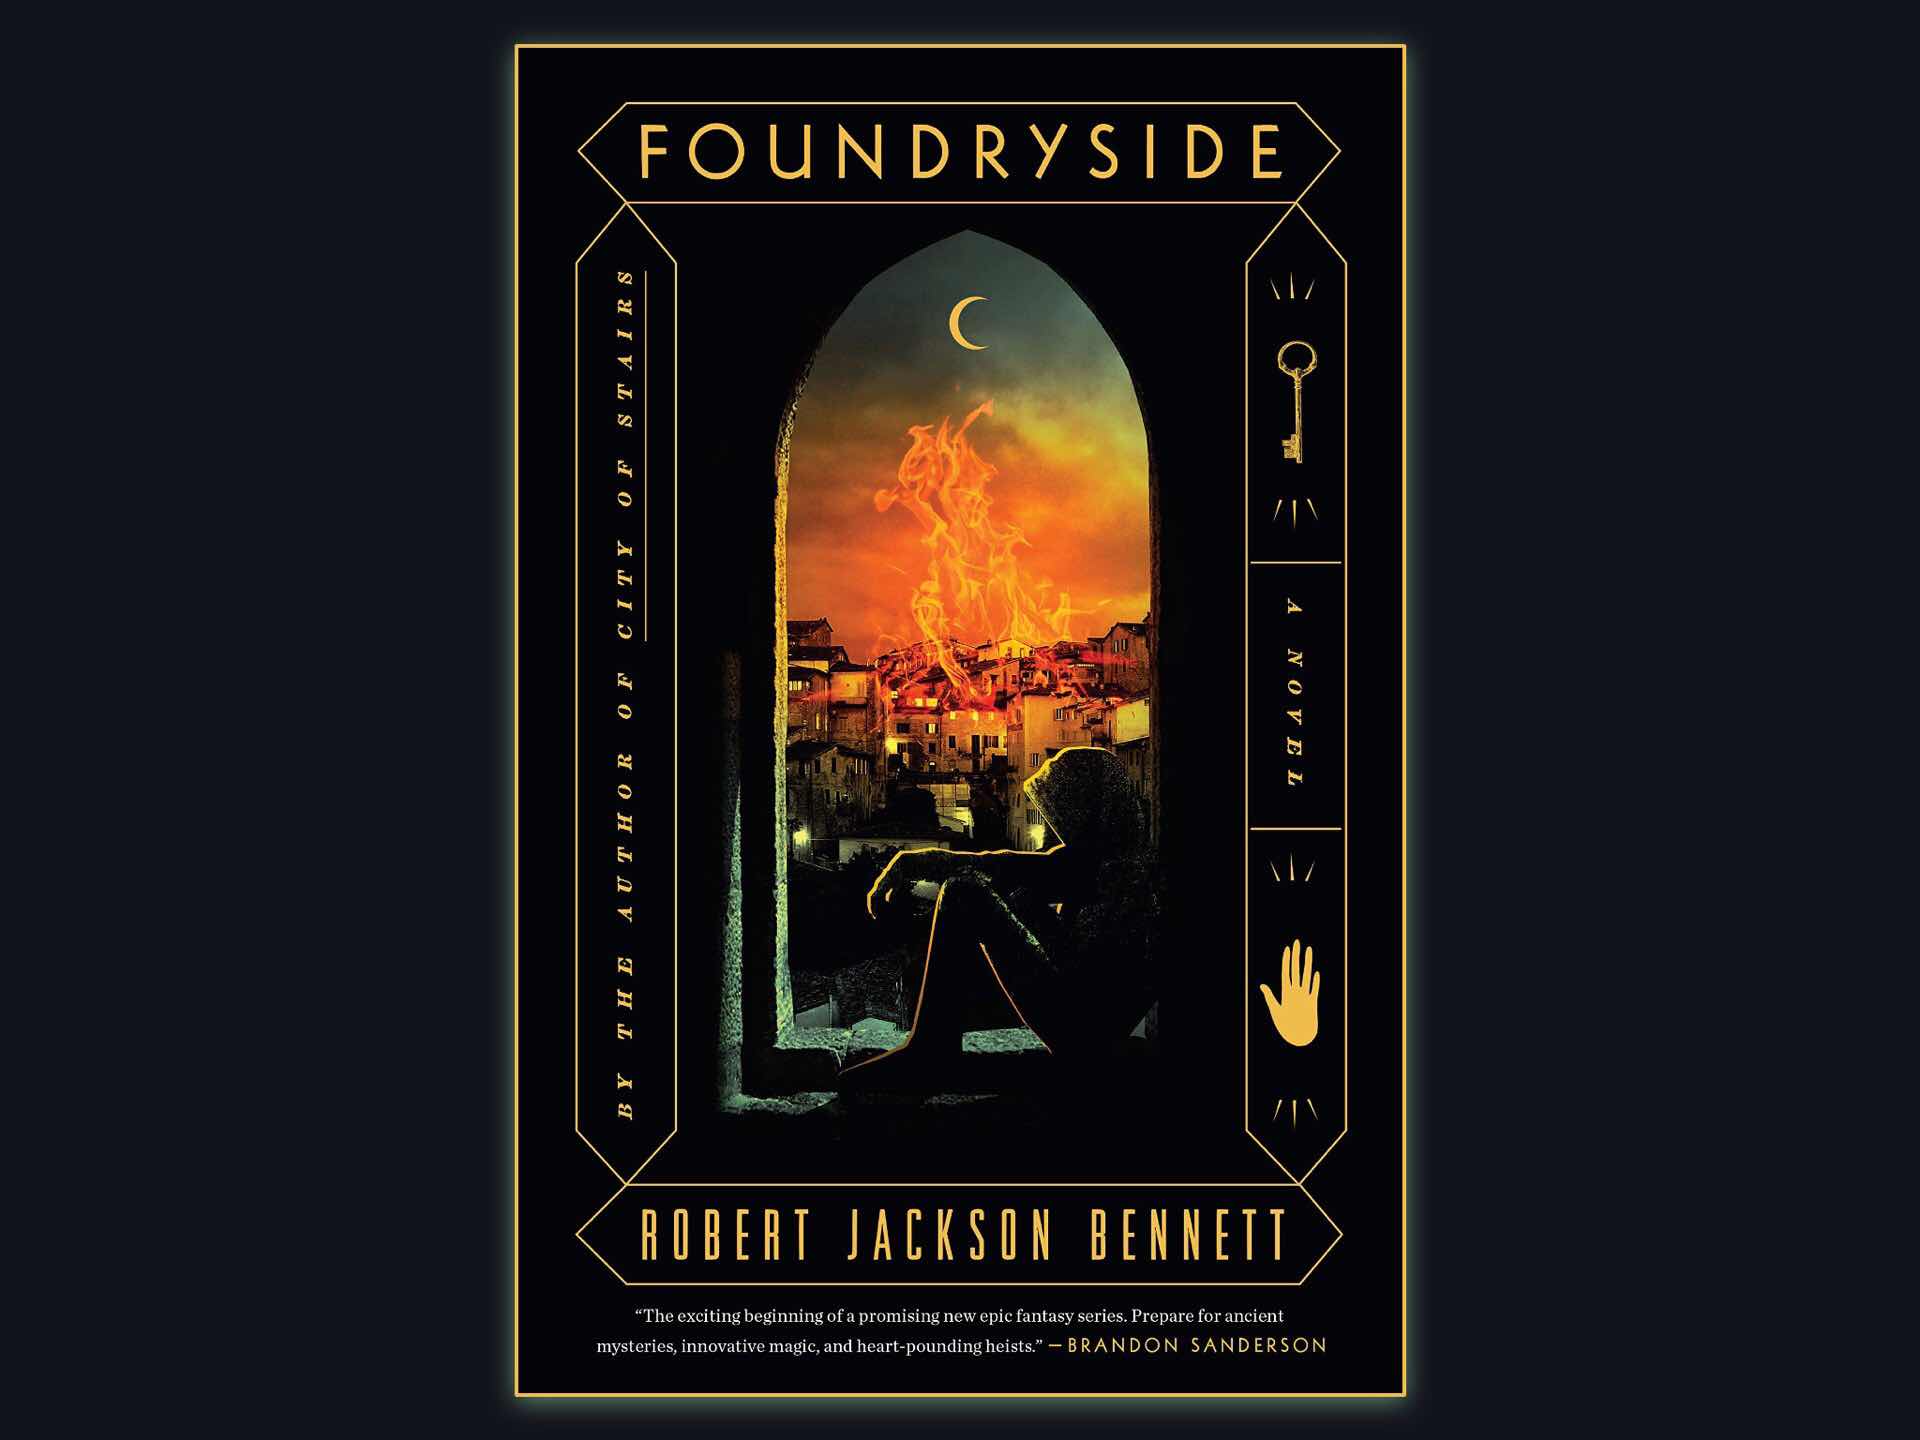 Foundryside by Robert Jackson Bennett. ($20 hardcover, $16 paperback)